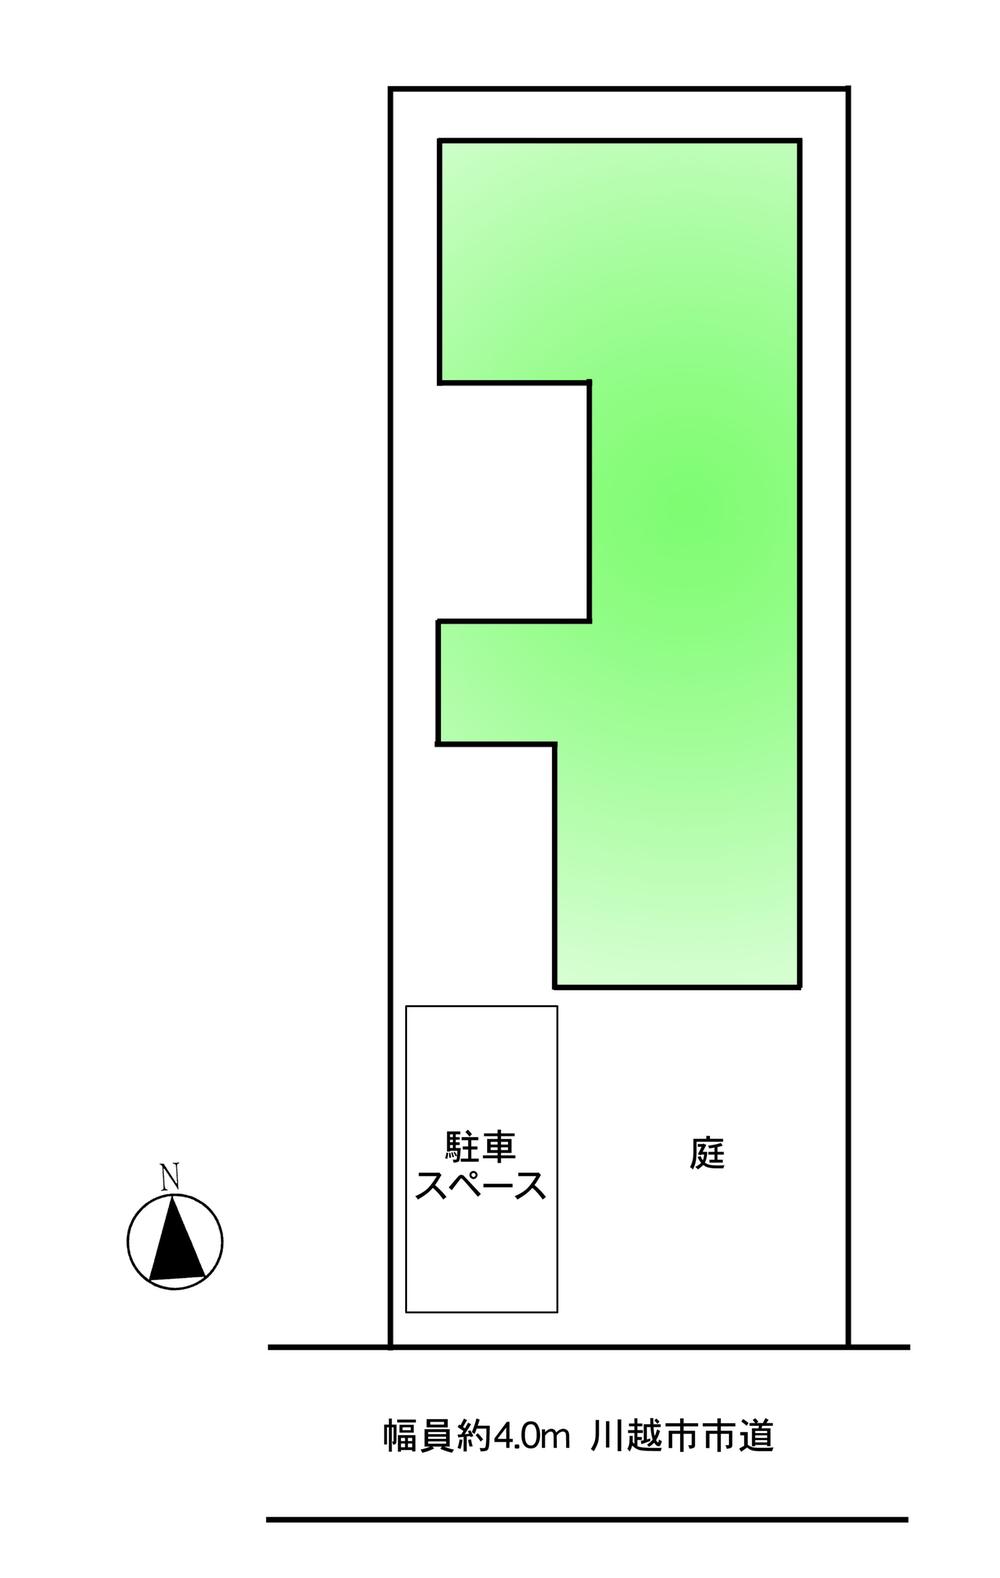 Compartment figure. 15.8 million yen, 4LDK, Land area 132.24 sq m , Building area 109.04 sq m